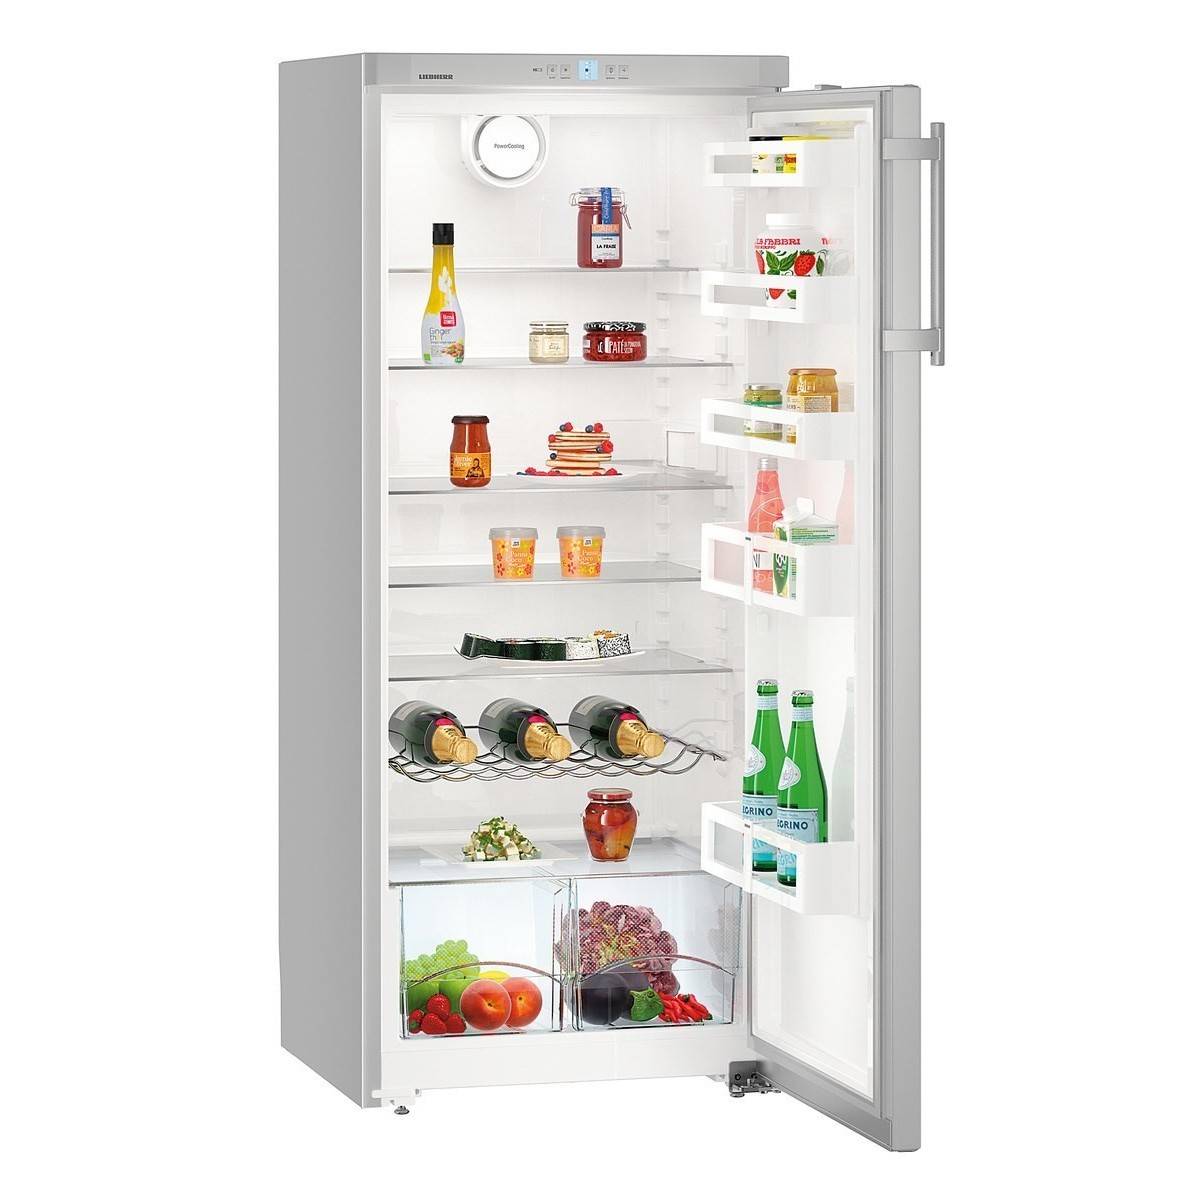 Сколько весит холодильник? от чего зависит вес холодильника?